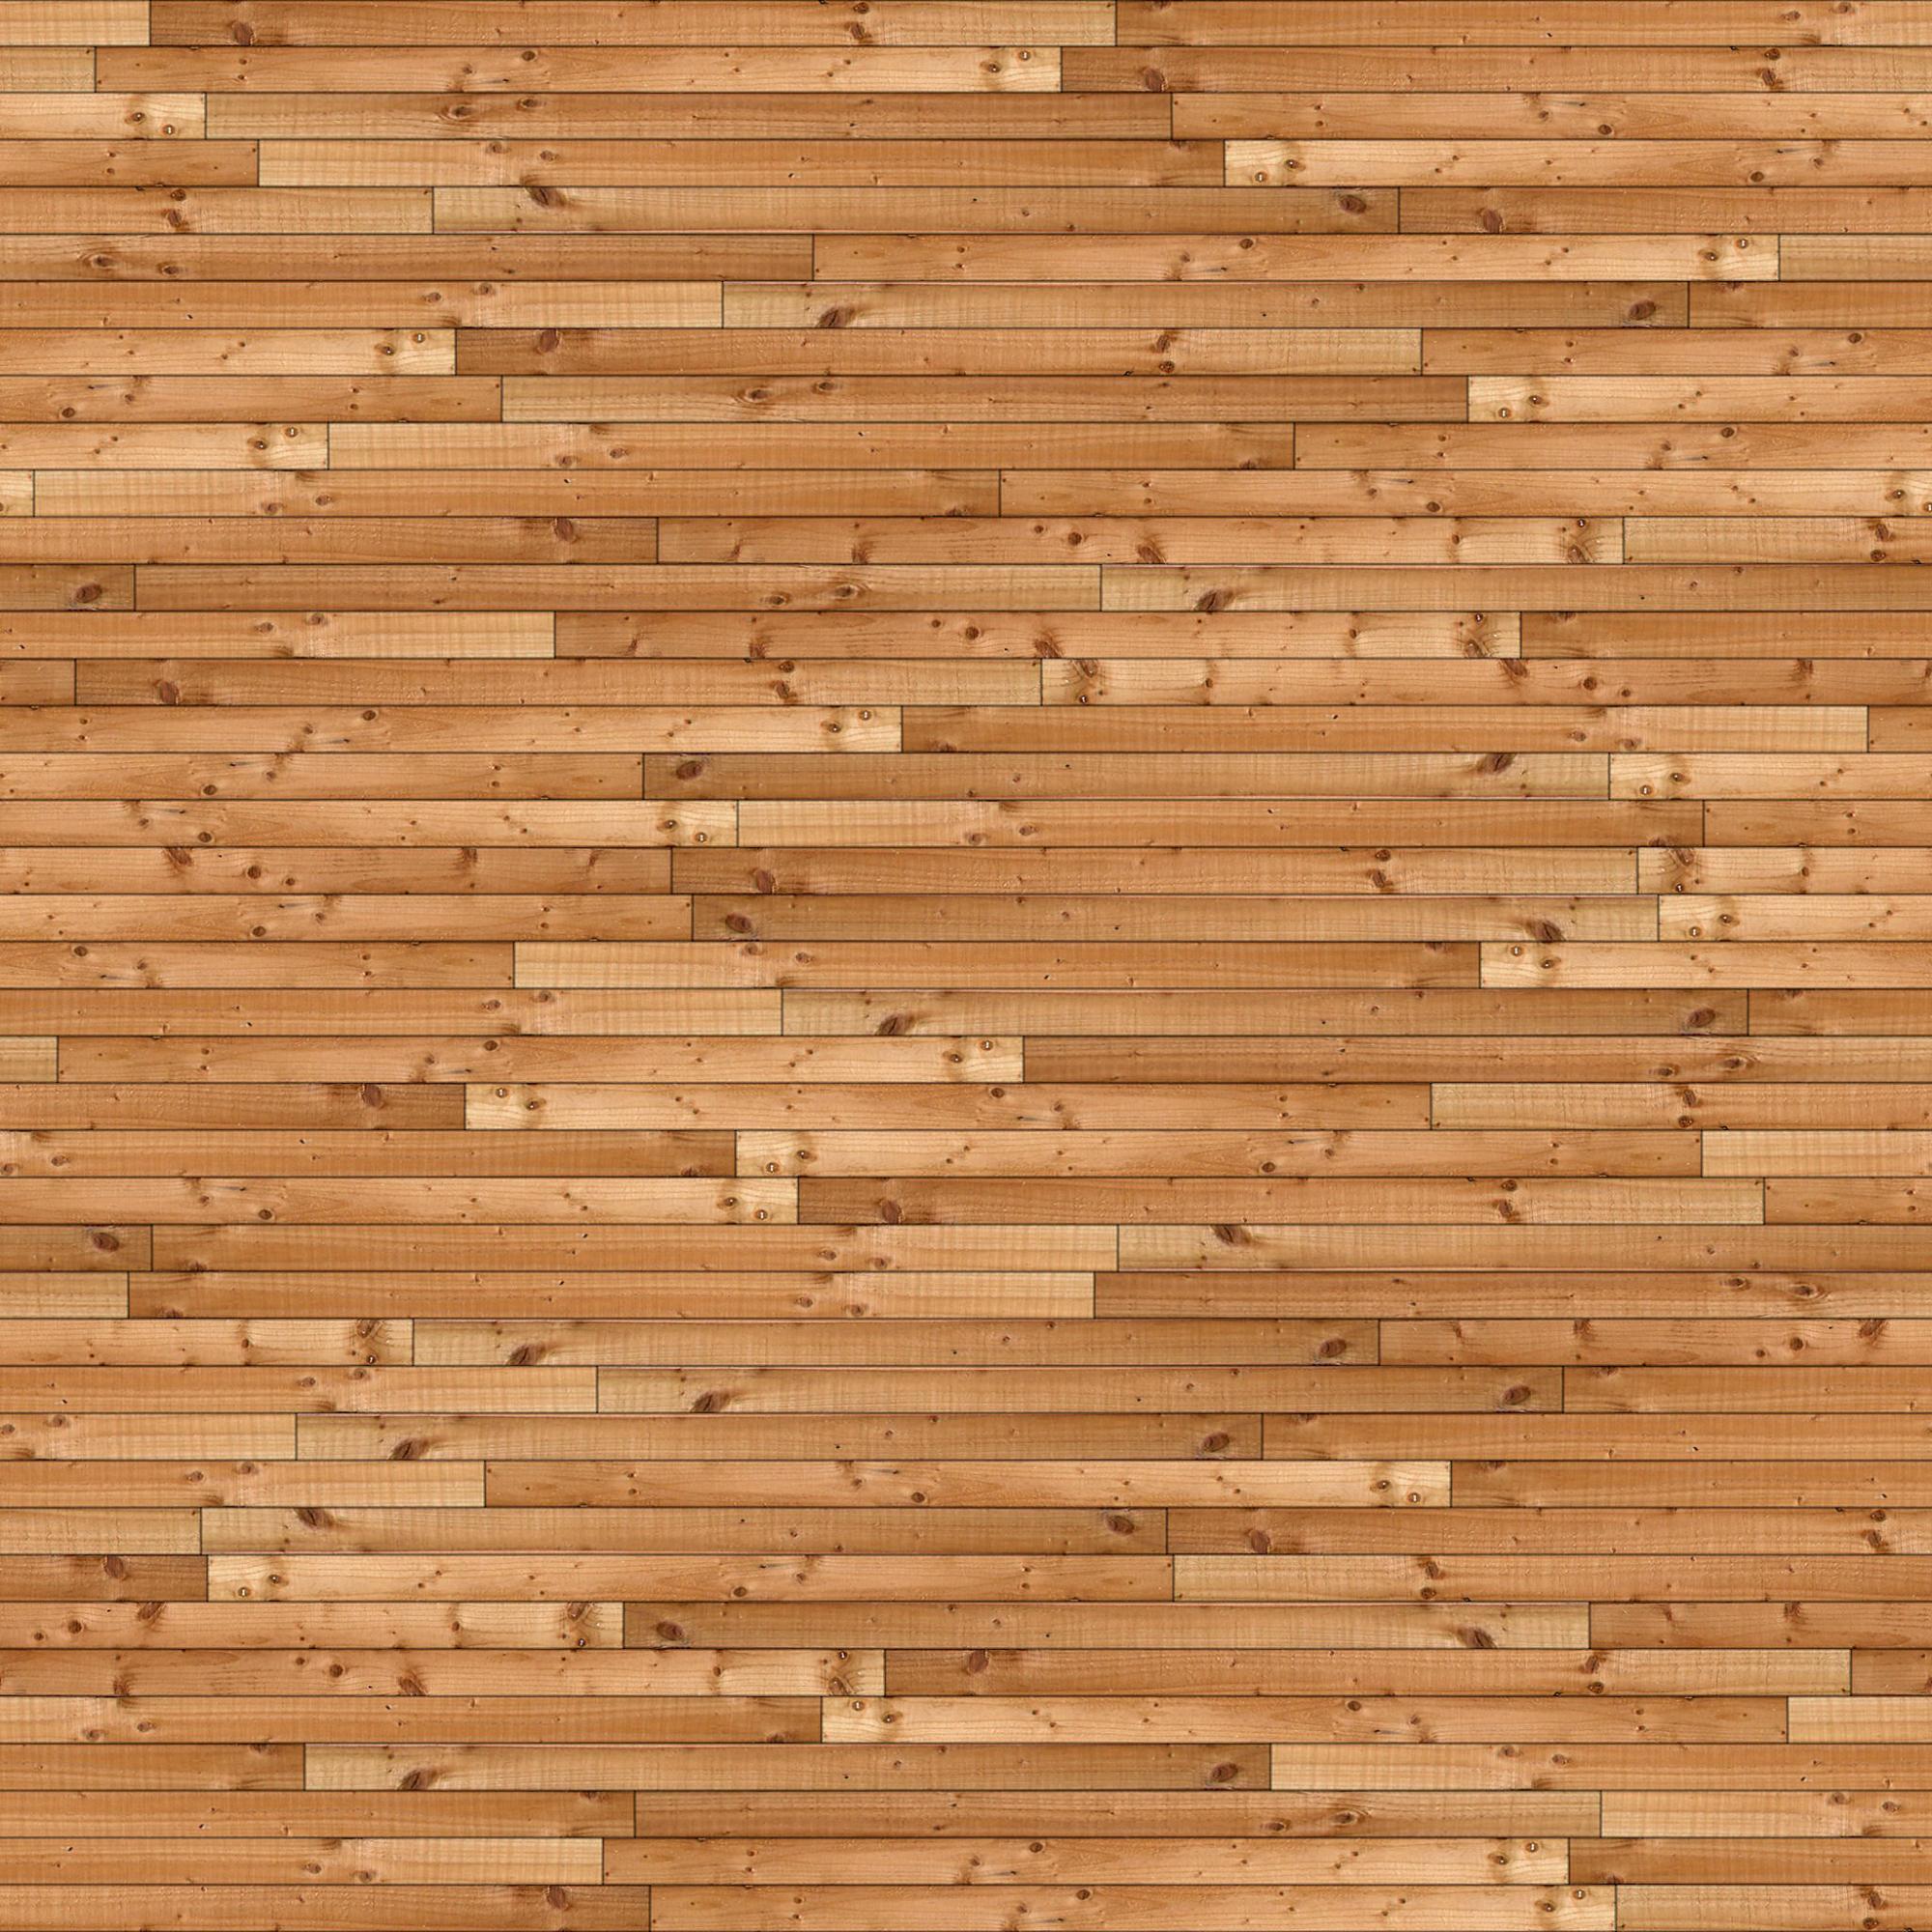 Wood floorboards texture